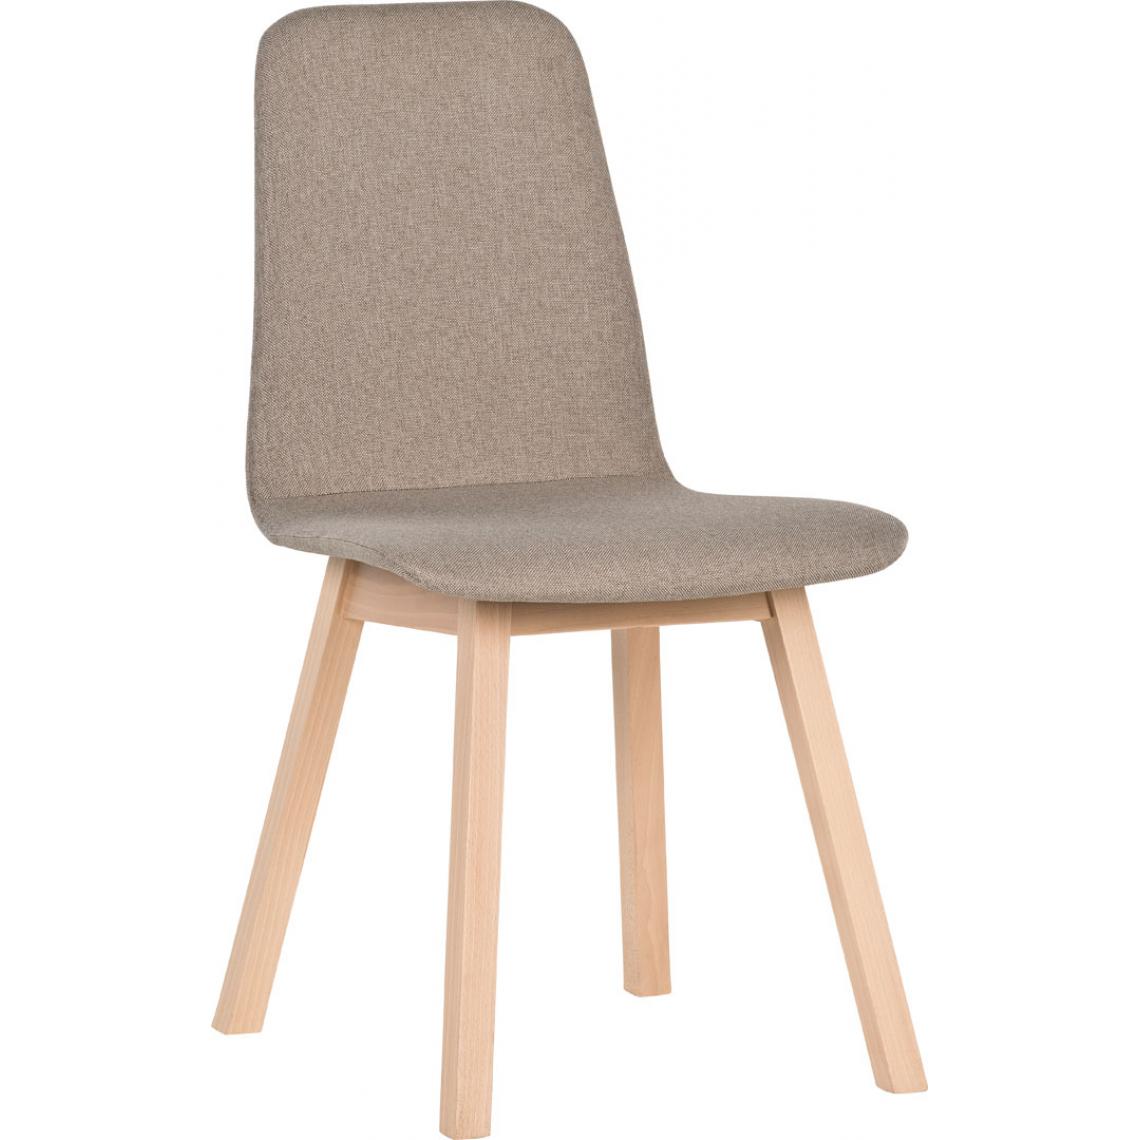 Hucoco - 4YOU - Chaise style scandinave - 85x50x45 cm - Assise et dosier ergonomiqe - Pieds en bois naturel - Chaise design - Chêne/beige - Chaises